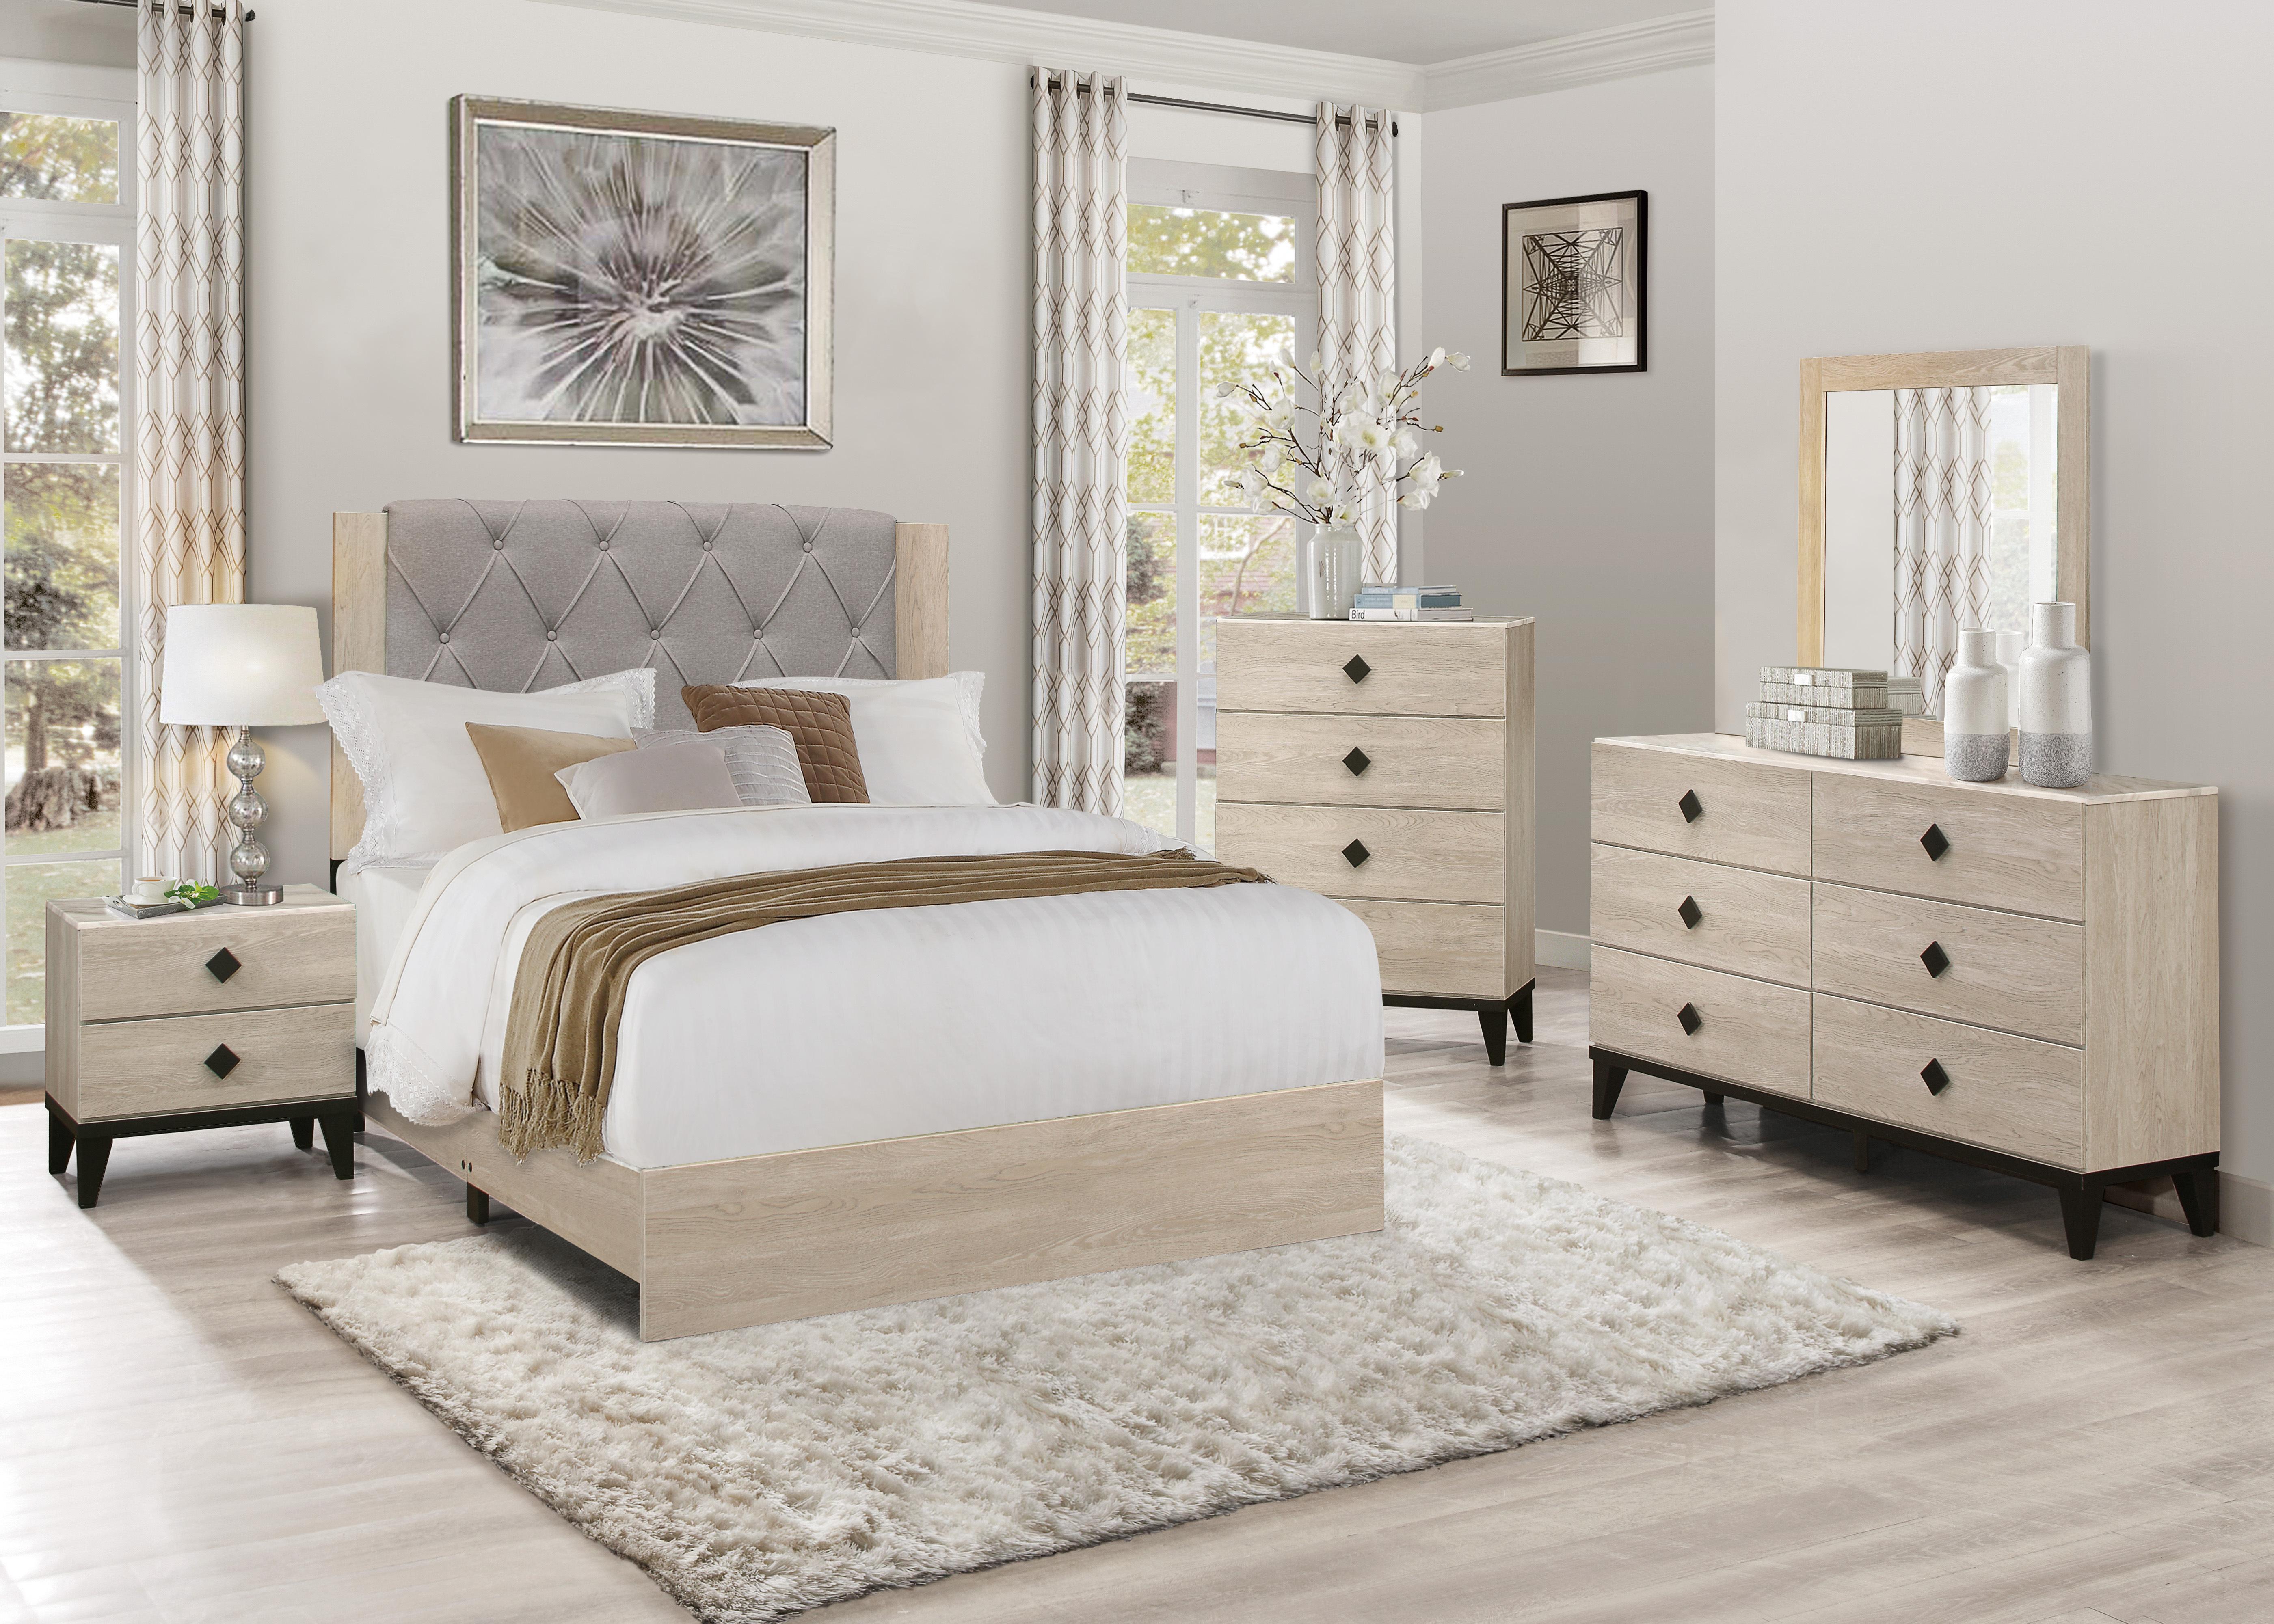 

    
Modern Cream Wood King Bedroom Set 5pcs Homelegance 1524K-1EK Whiting
